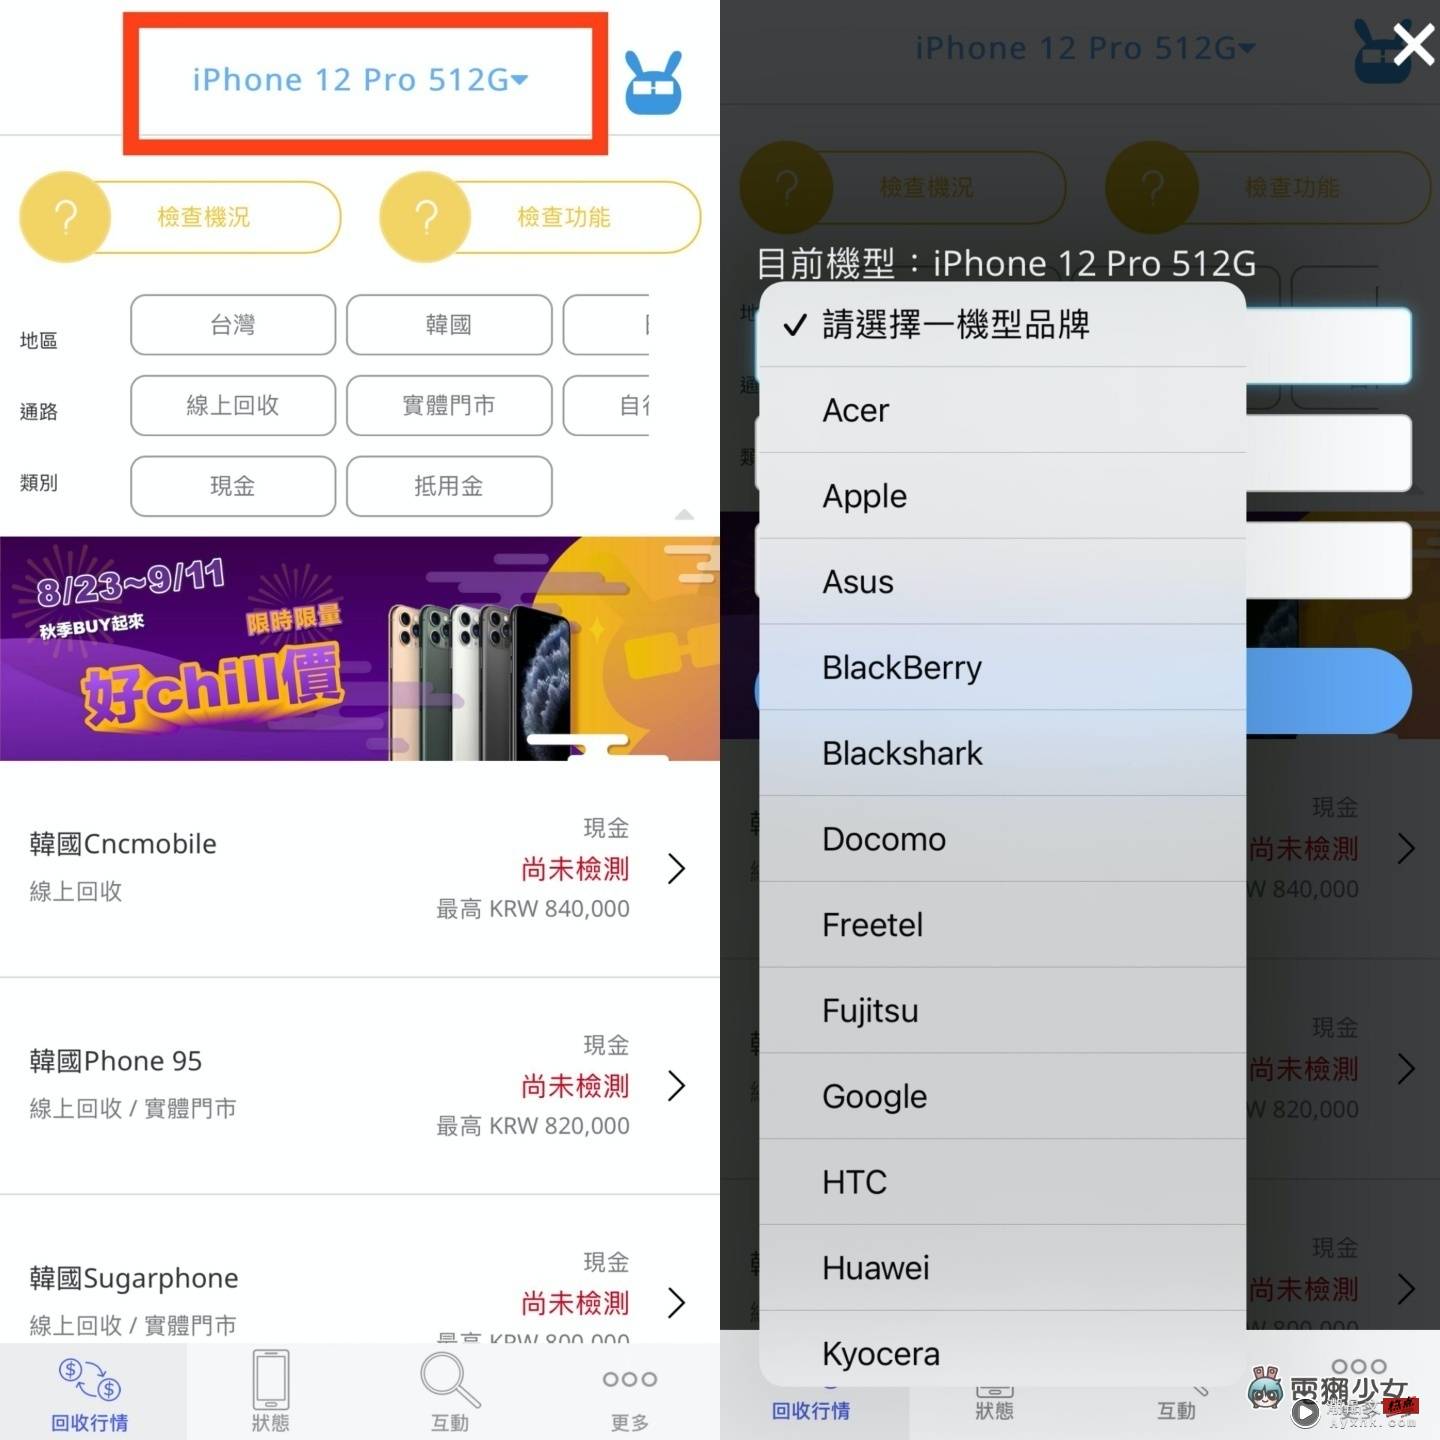 好想买 iPhone 14 Pro 但钱钱不够！靠卖旧机补贴怎样最划算？ 中国台湾二手通路回收价，‘ 手机医生 ’帮你一次比清楚！（Android／iOS） 数码科技 图2张